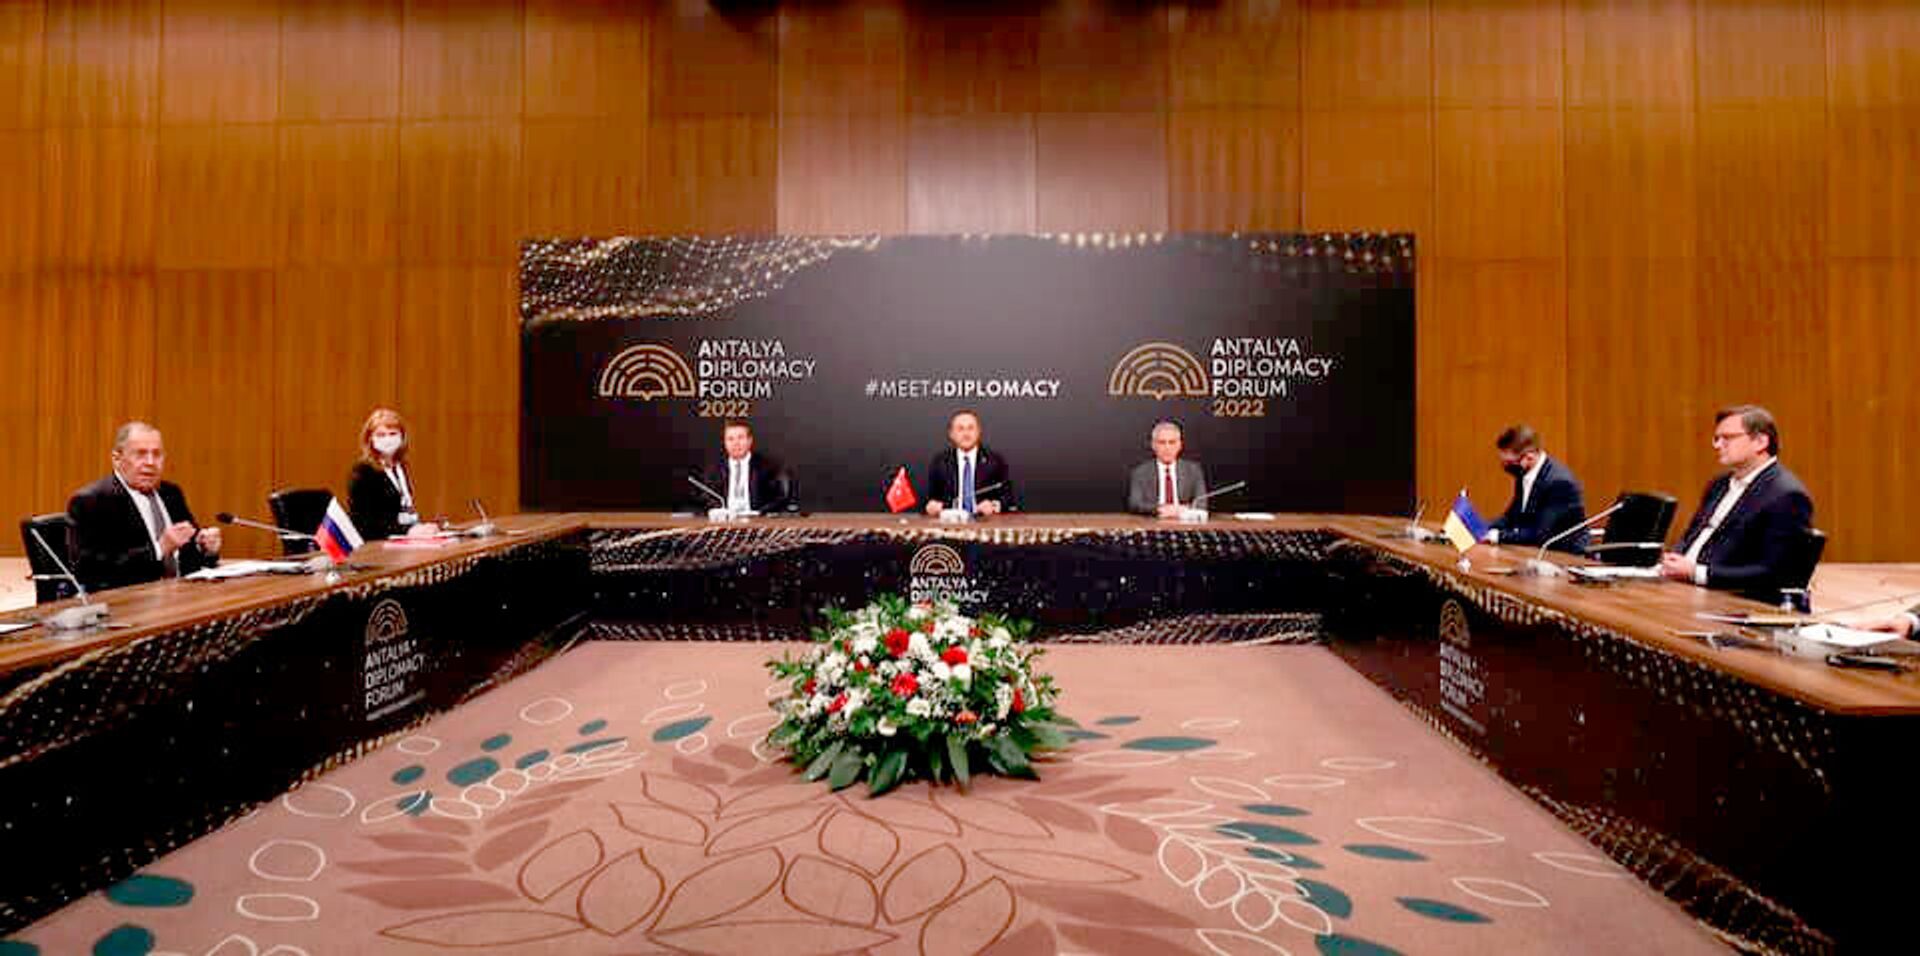 Встреча министров иностранных дел России, Турции и Украины в Анталье, Турция, 10 марта 2022 года - Sputnik Латвия, 1920, 10.03.2022